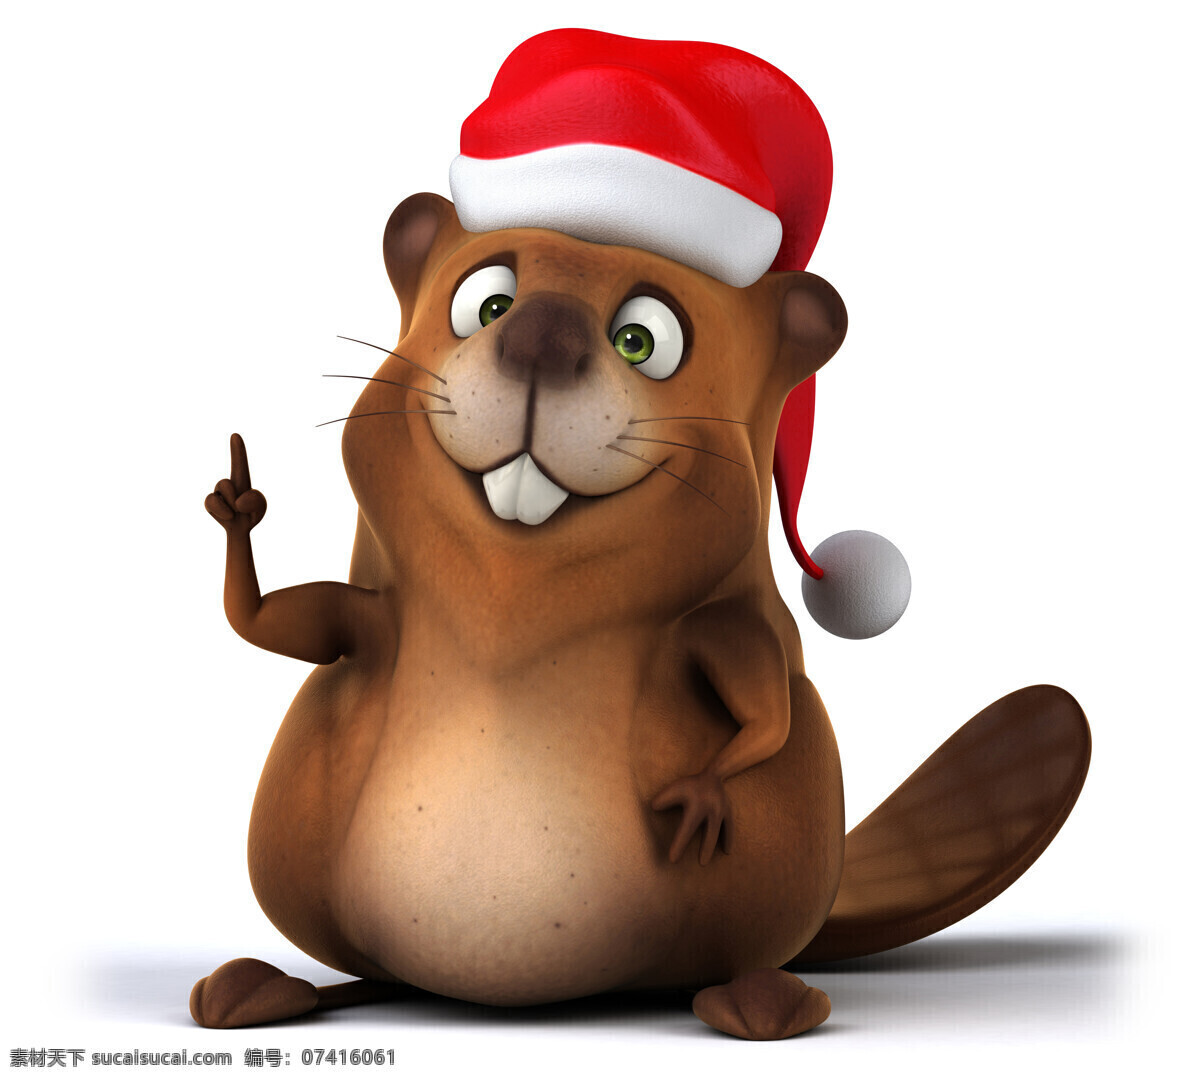 3d 动物图片 3d设计 卡通动物 圣诞节 圣诞帽 3d动物 地鼠 3d模型素材 其他3d模型